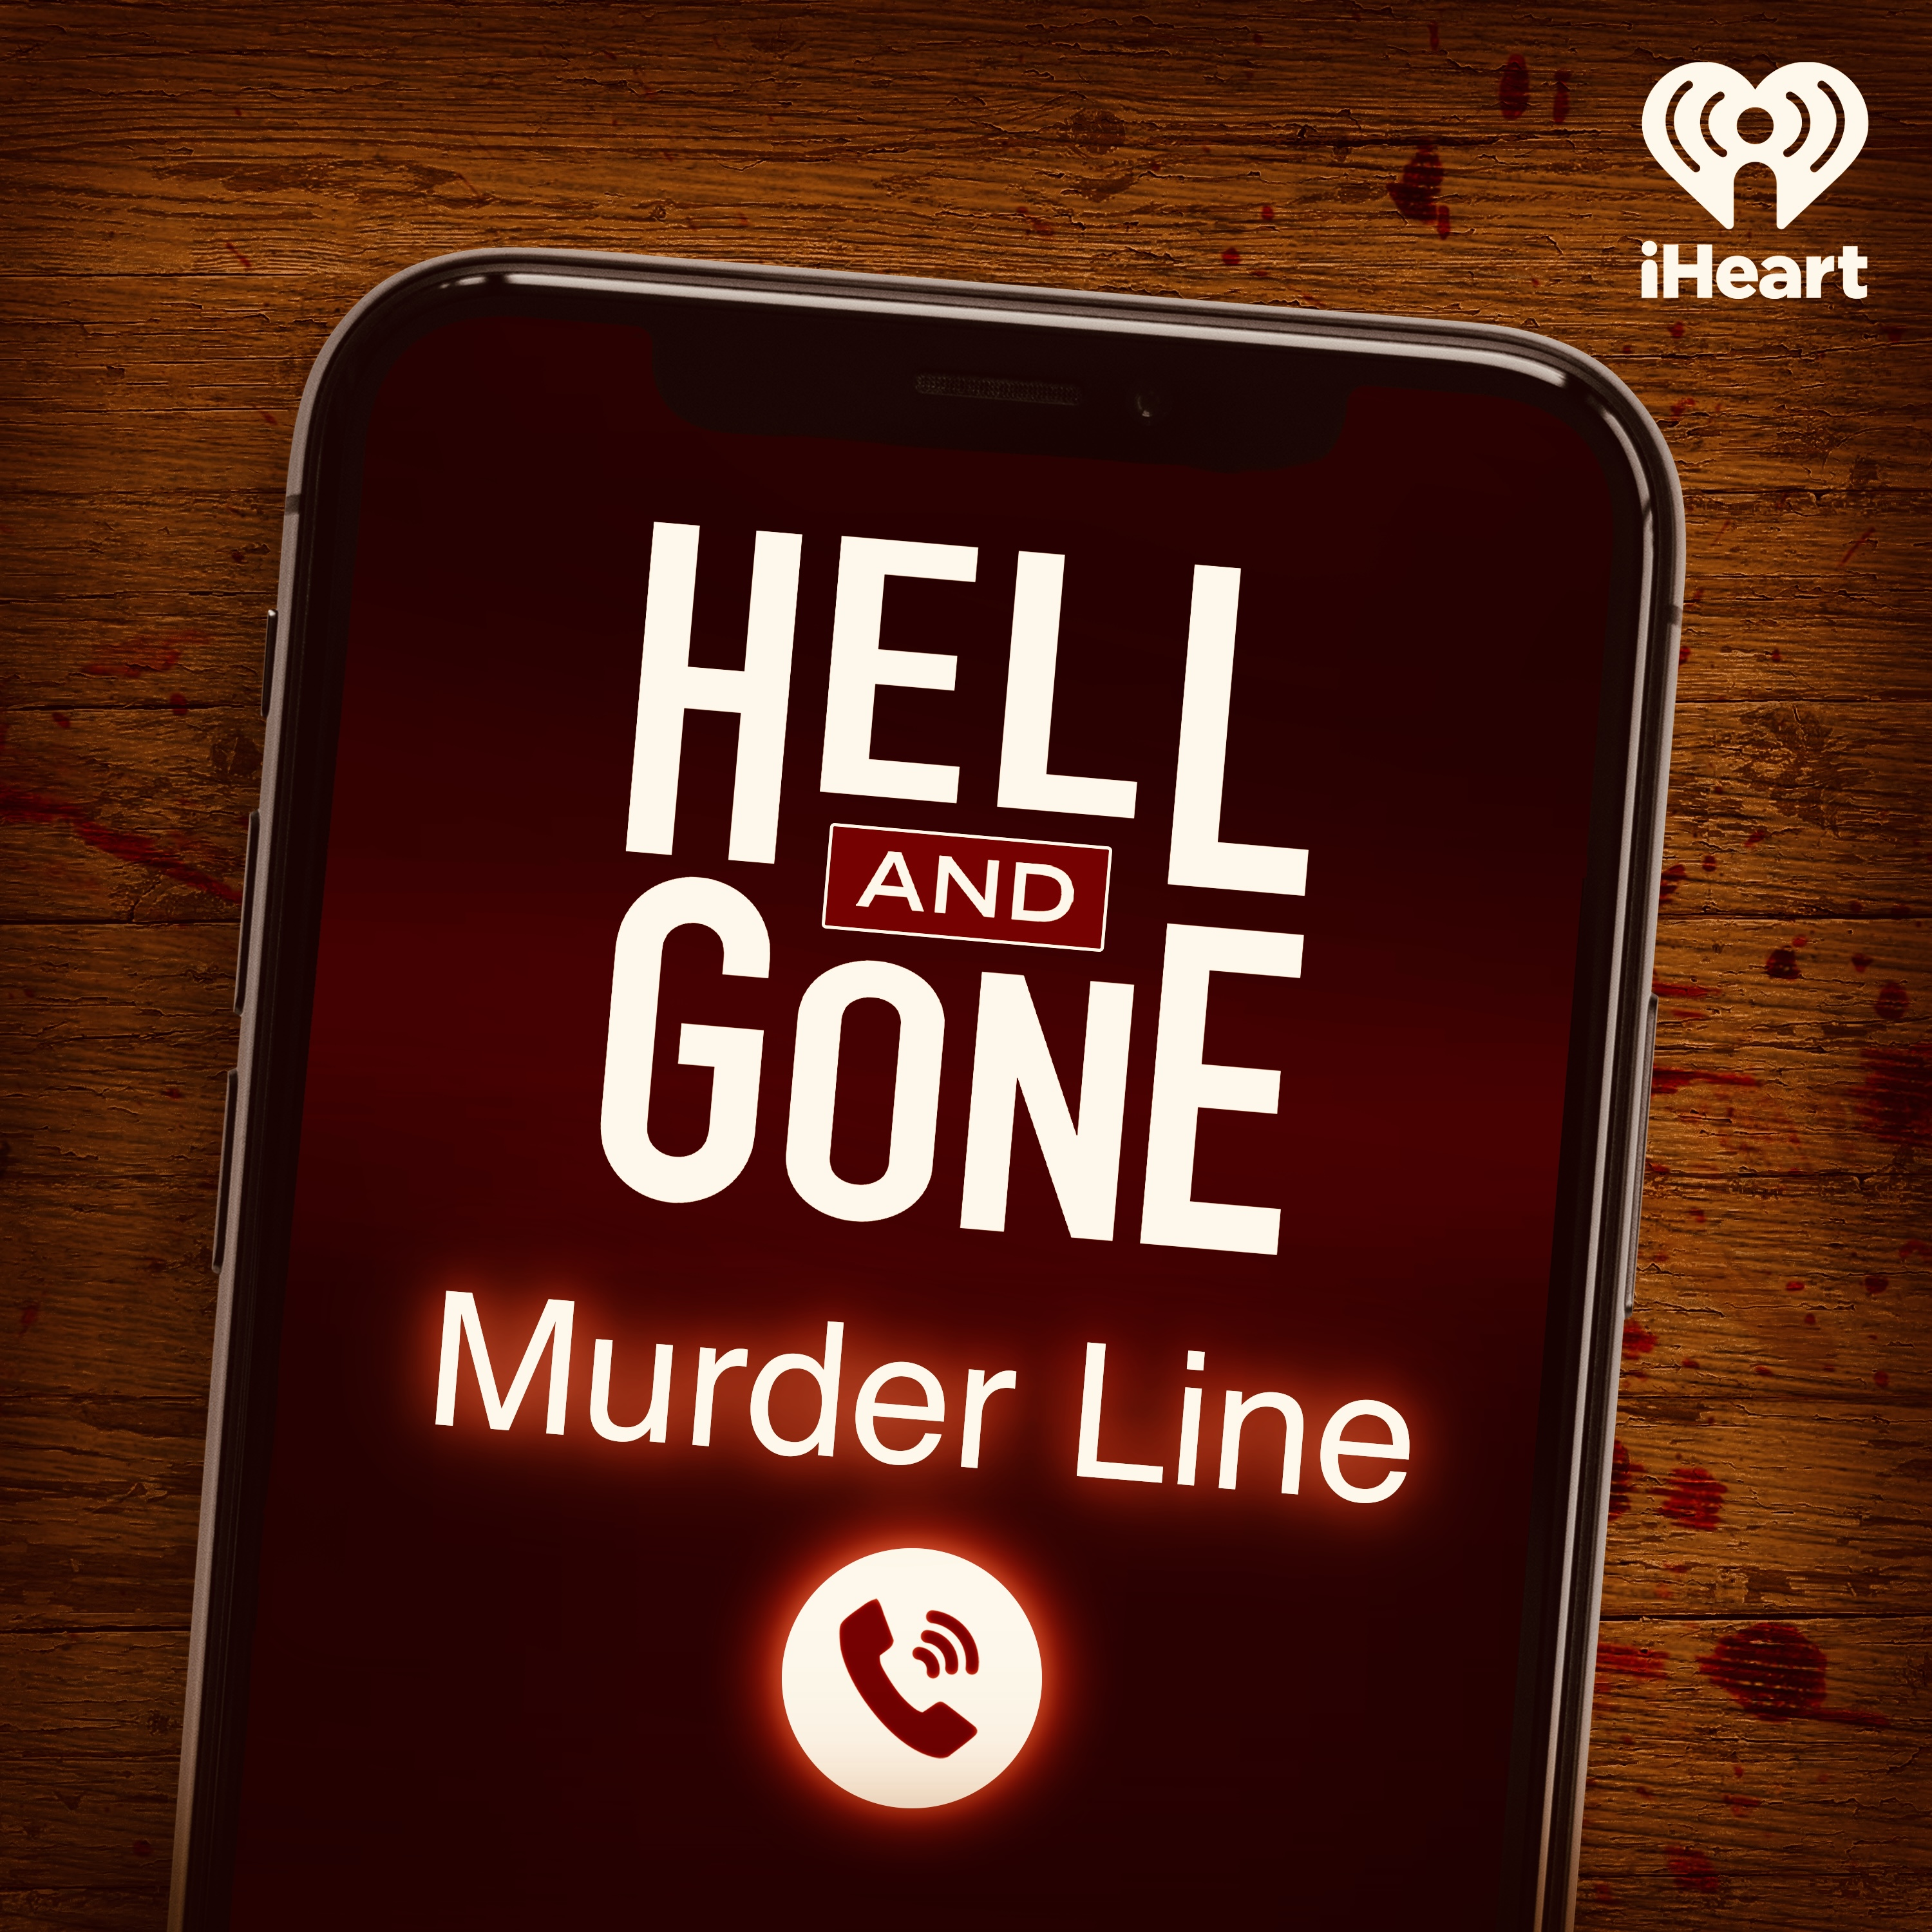 Hell and Gone Murder Line: John Forsyth